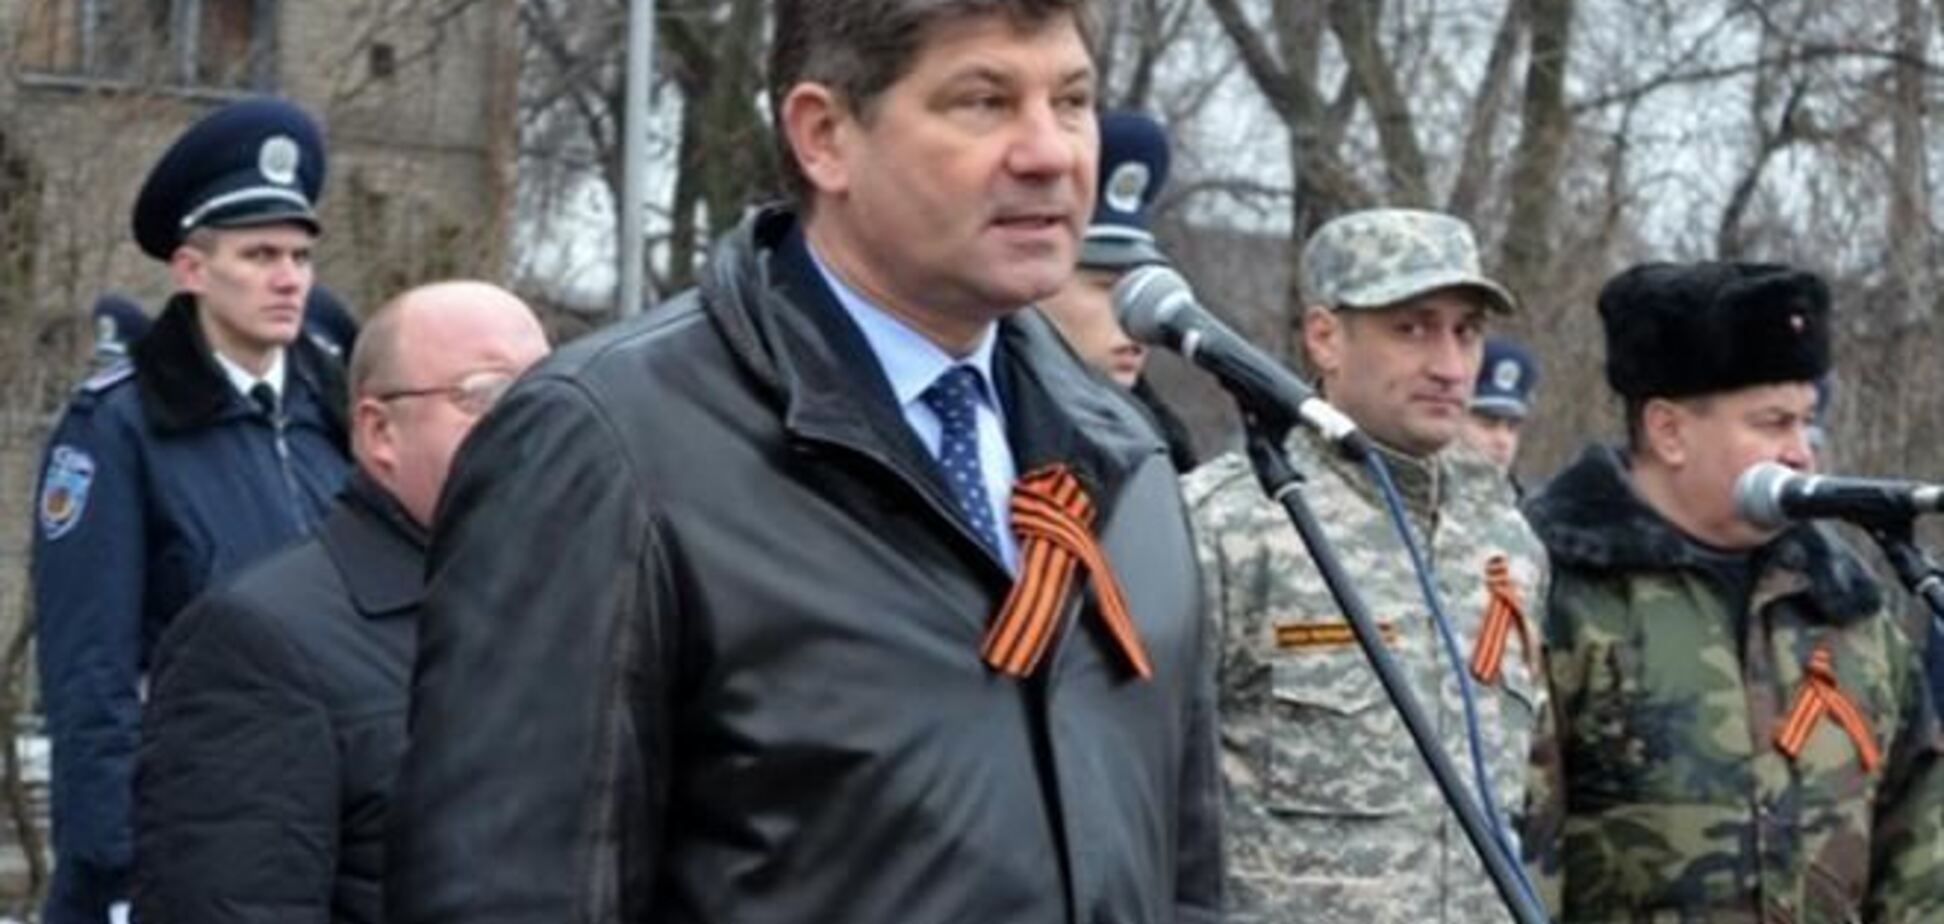 Мэр Луганска призвал навести порядок в стране 'жестко и бескомпромиссно'